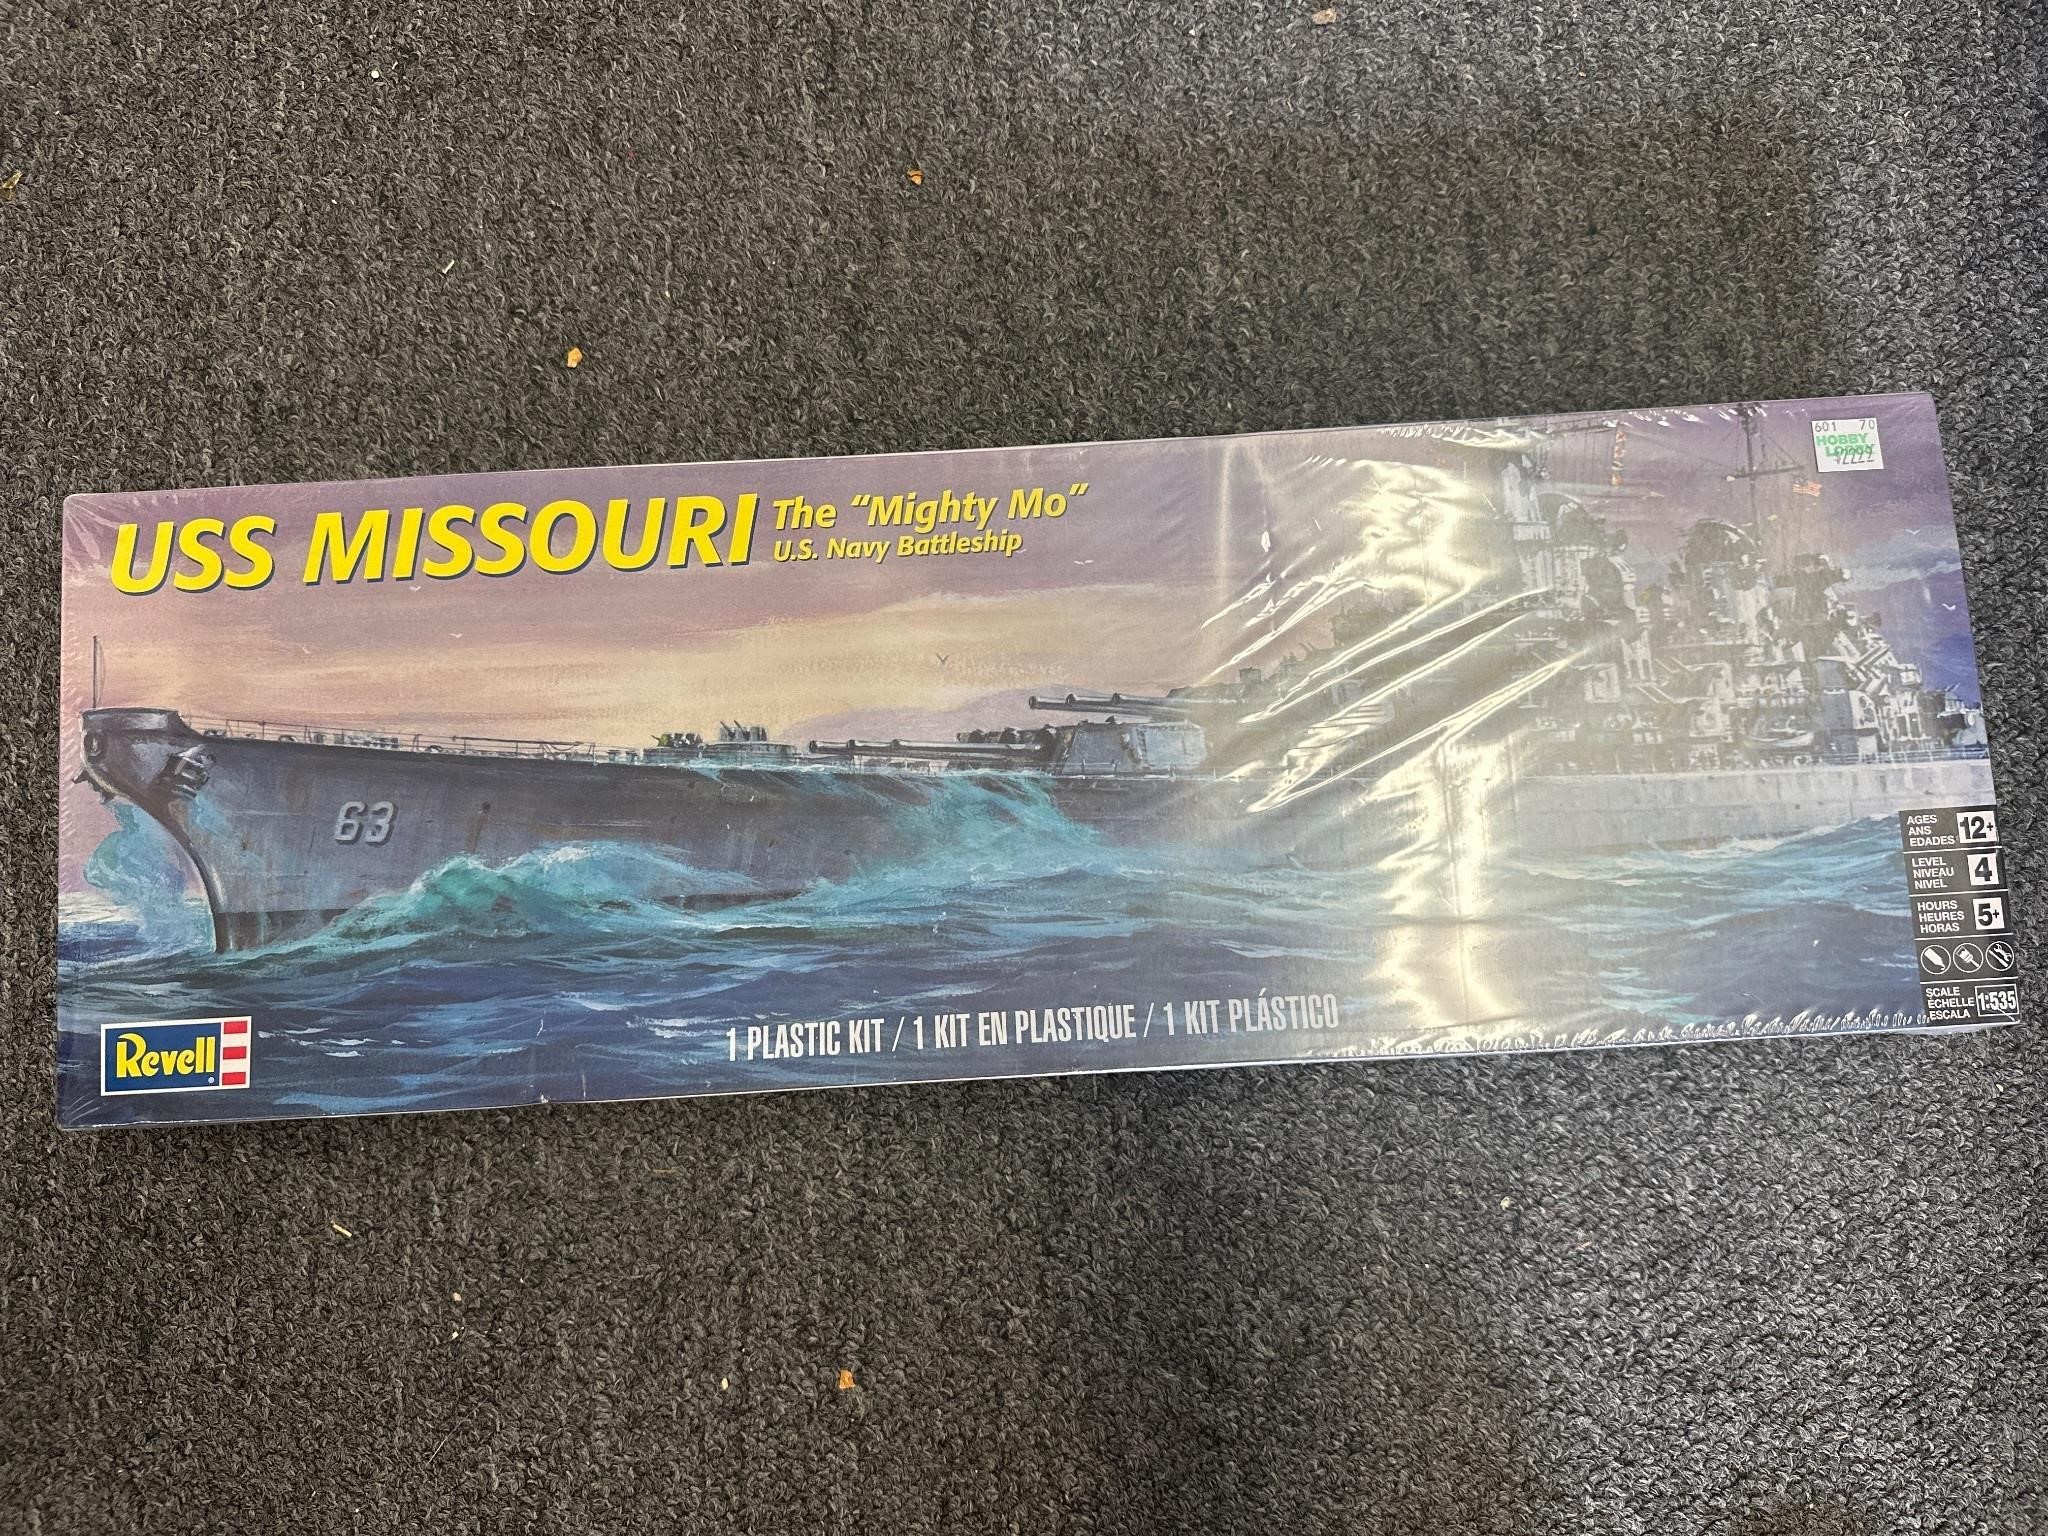 New Revell USS Missouri mighty Mo model kit